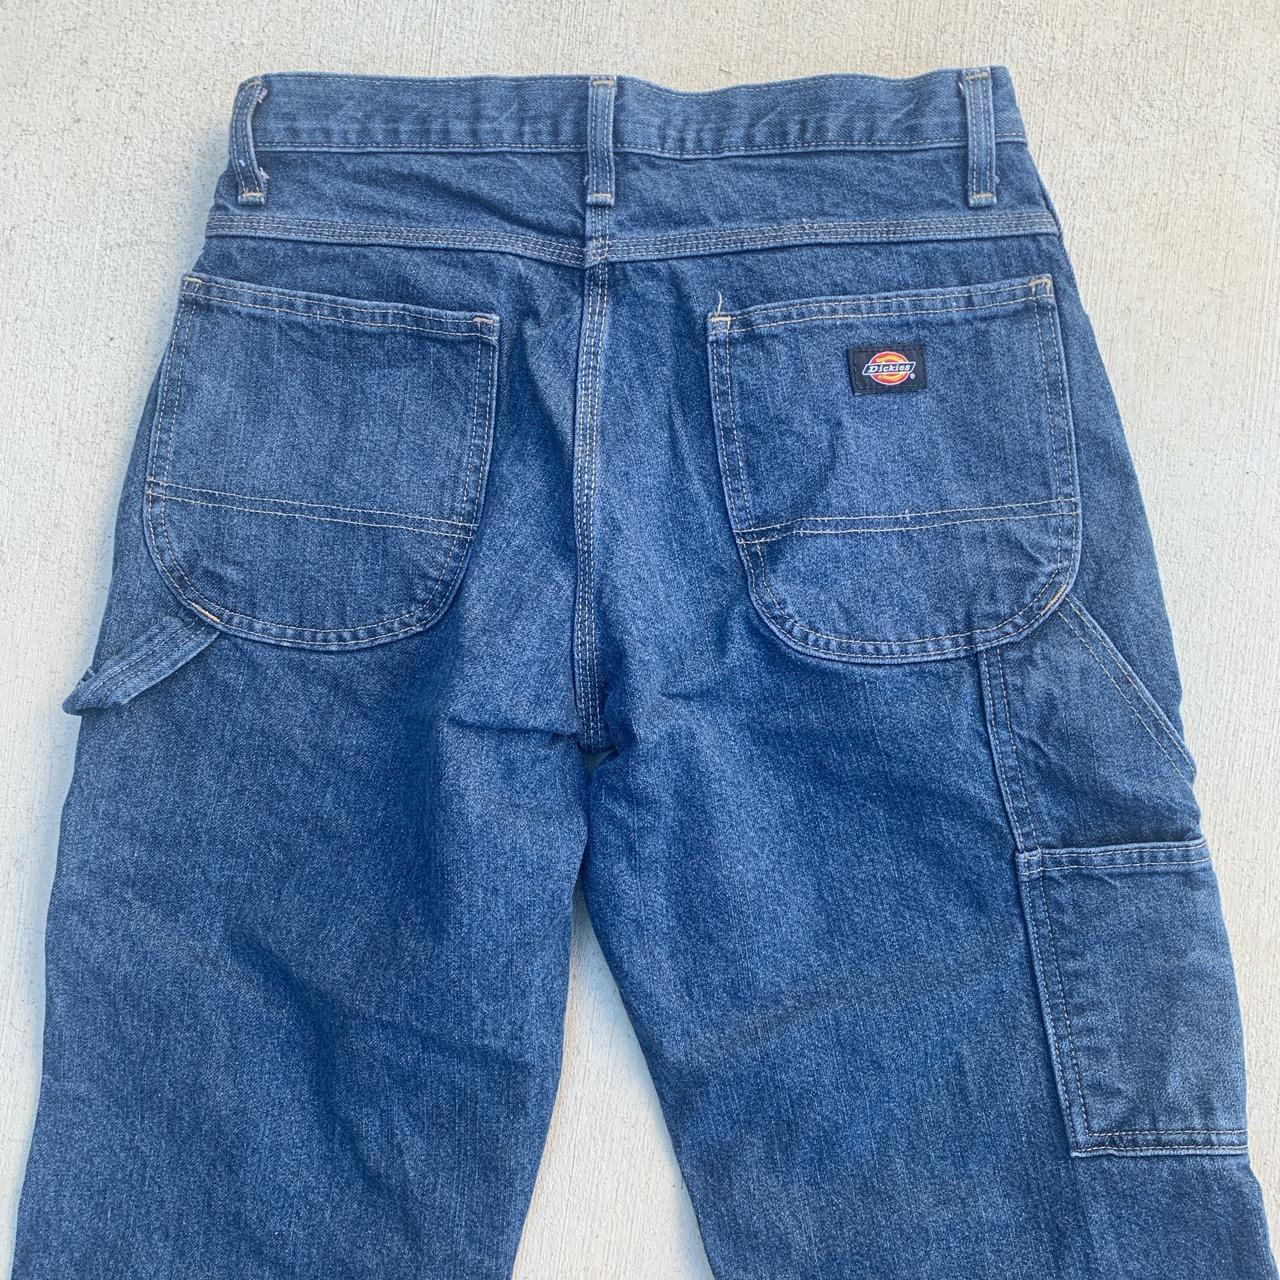 Dickies carpenter jeans Men’s size 30x30 #Dickies... - Depop